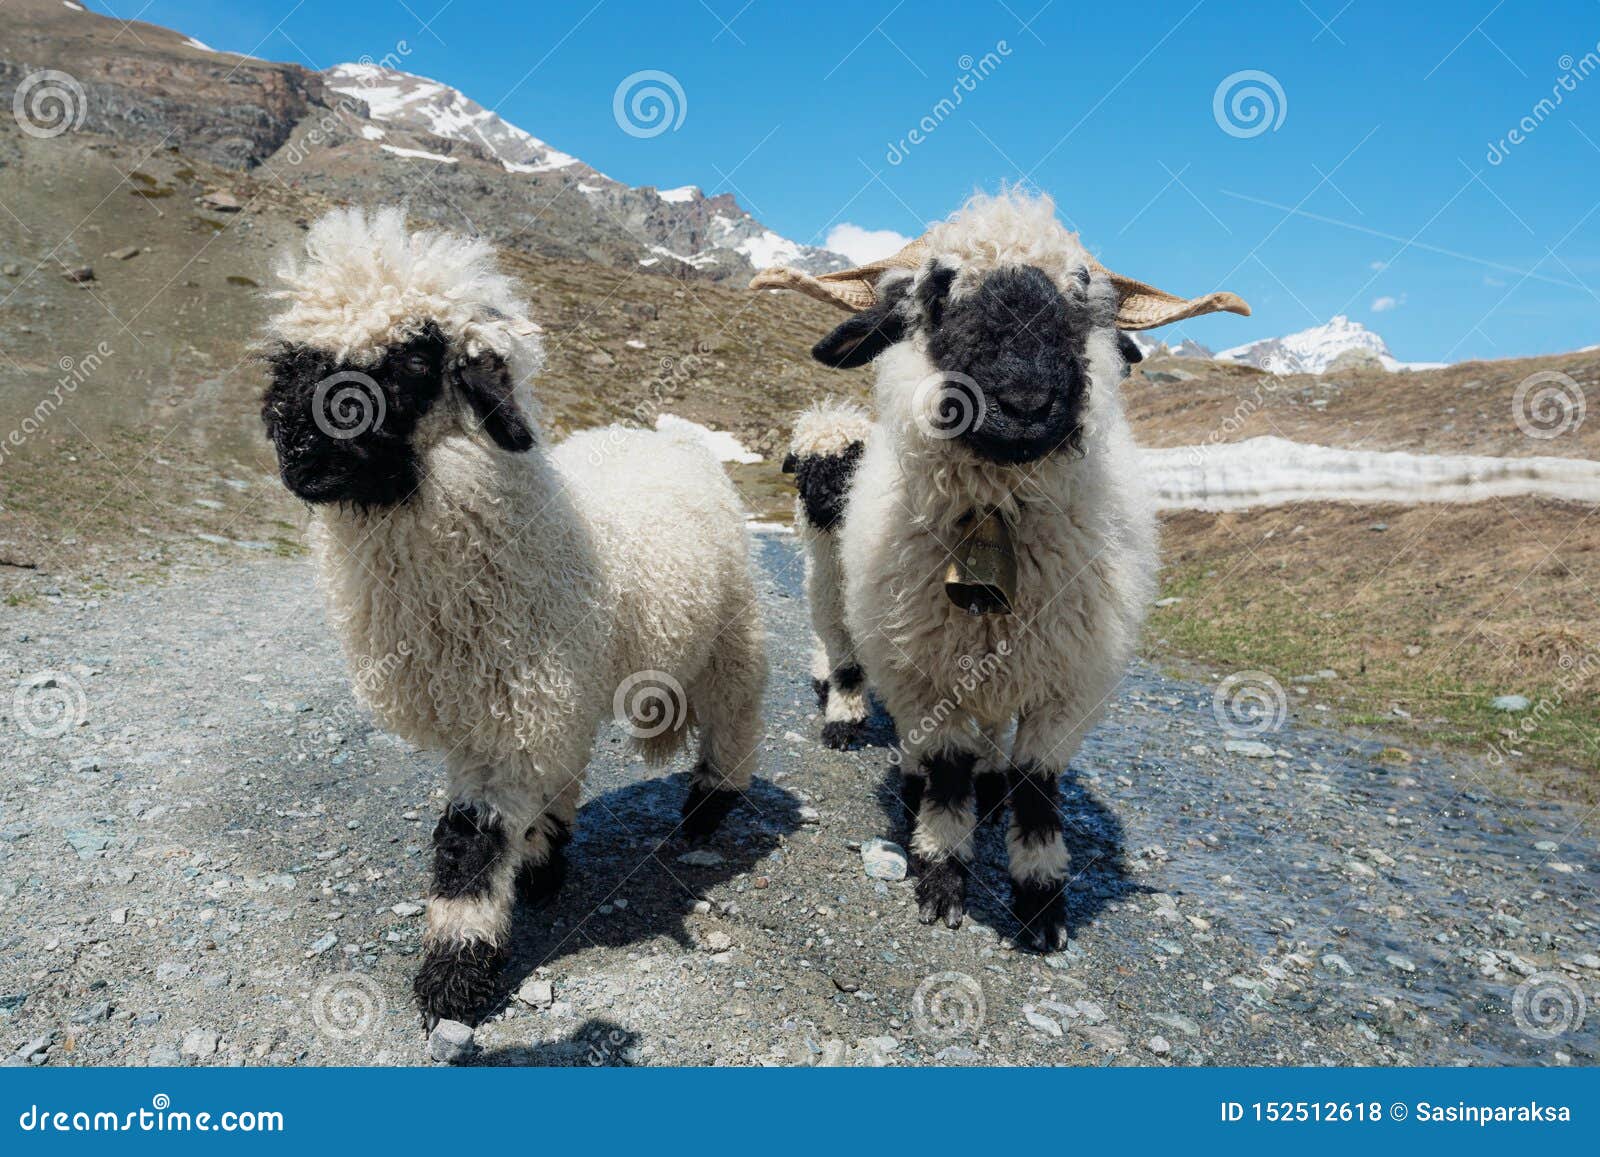 valais blacknose sheep on highland in zermatt, switzerland